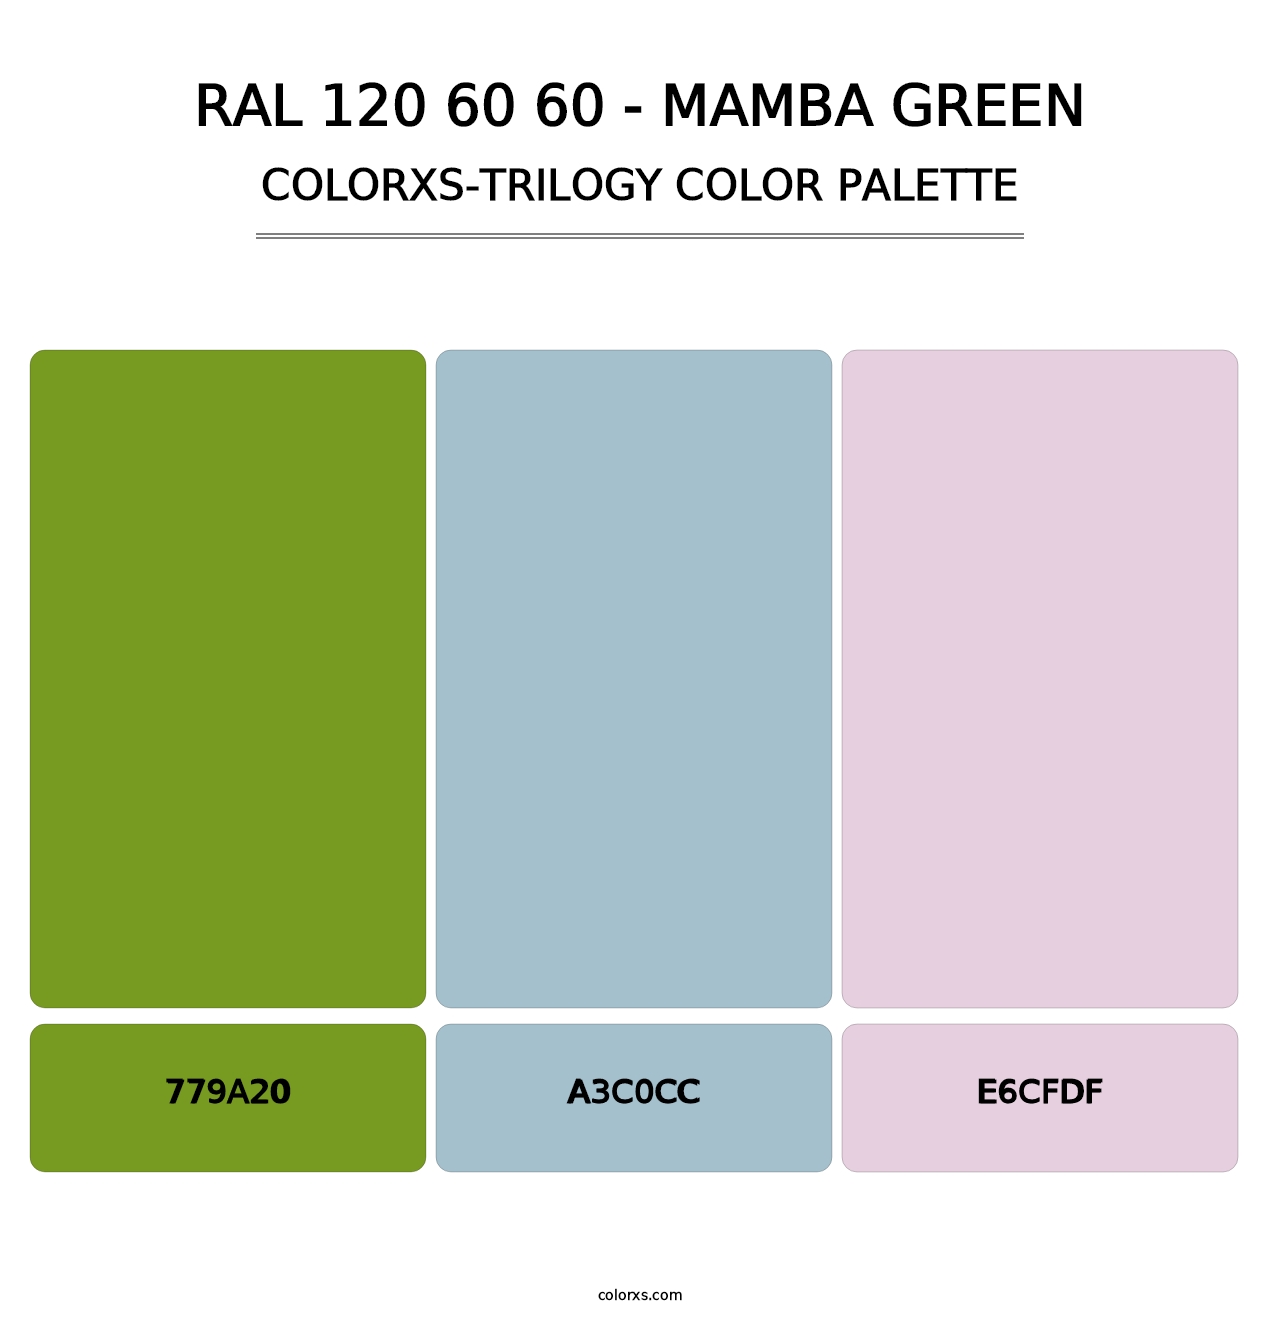 RAL 120 60 60 - Mamba Green - Colorxs Trilogy Palette